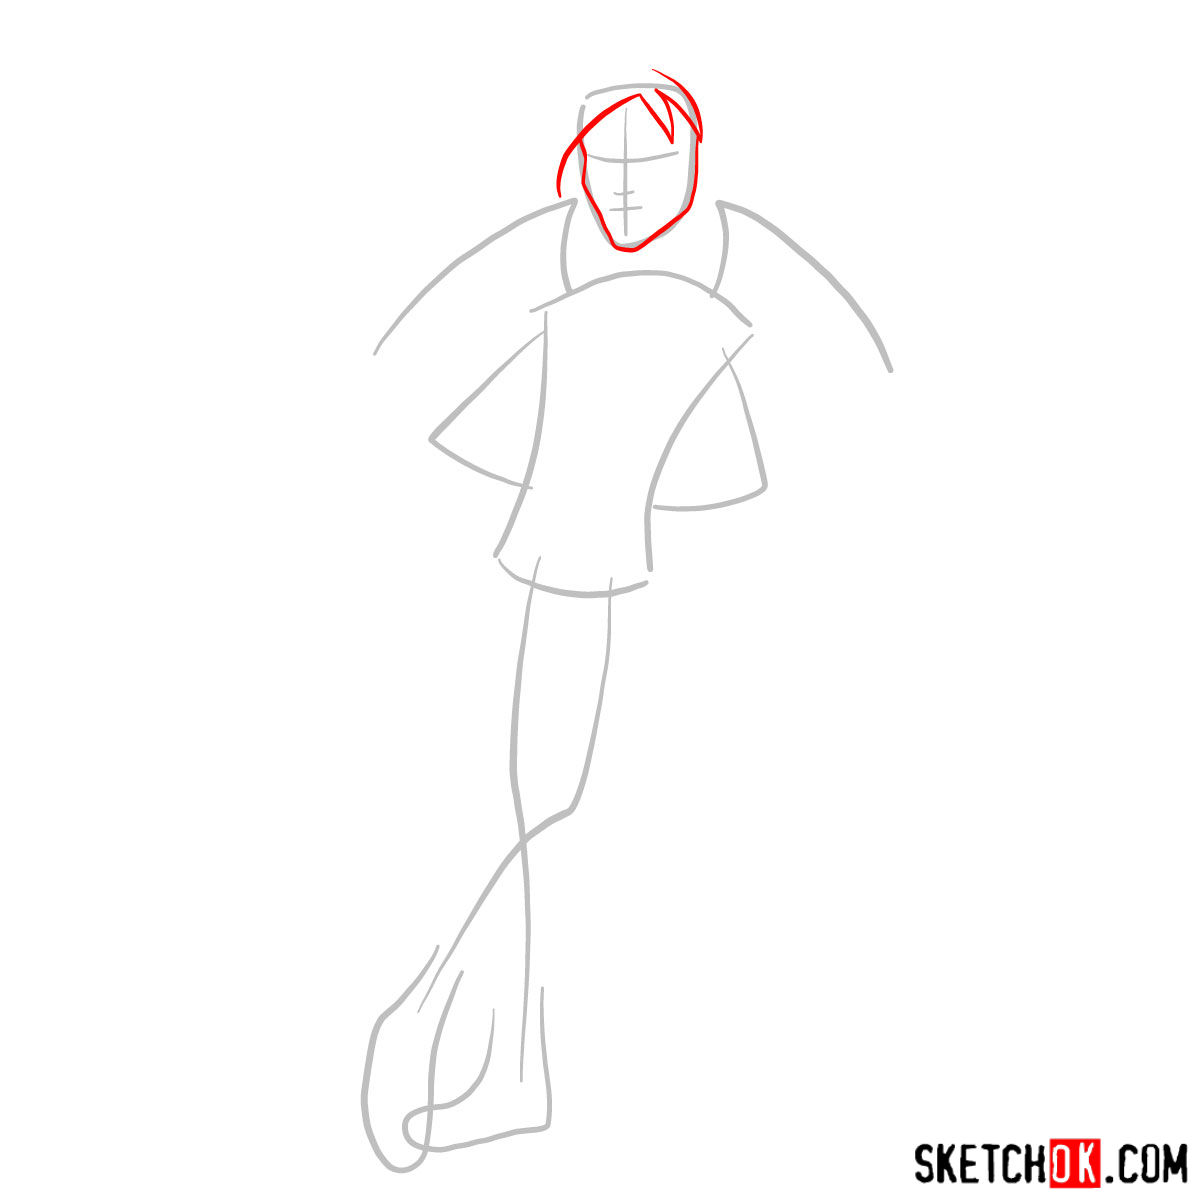 How to draw Garrott du Roque - step 02